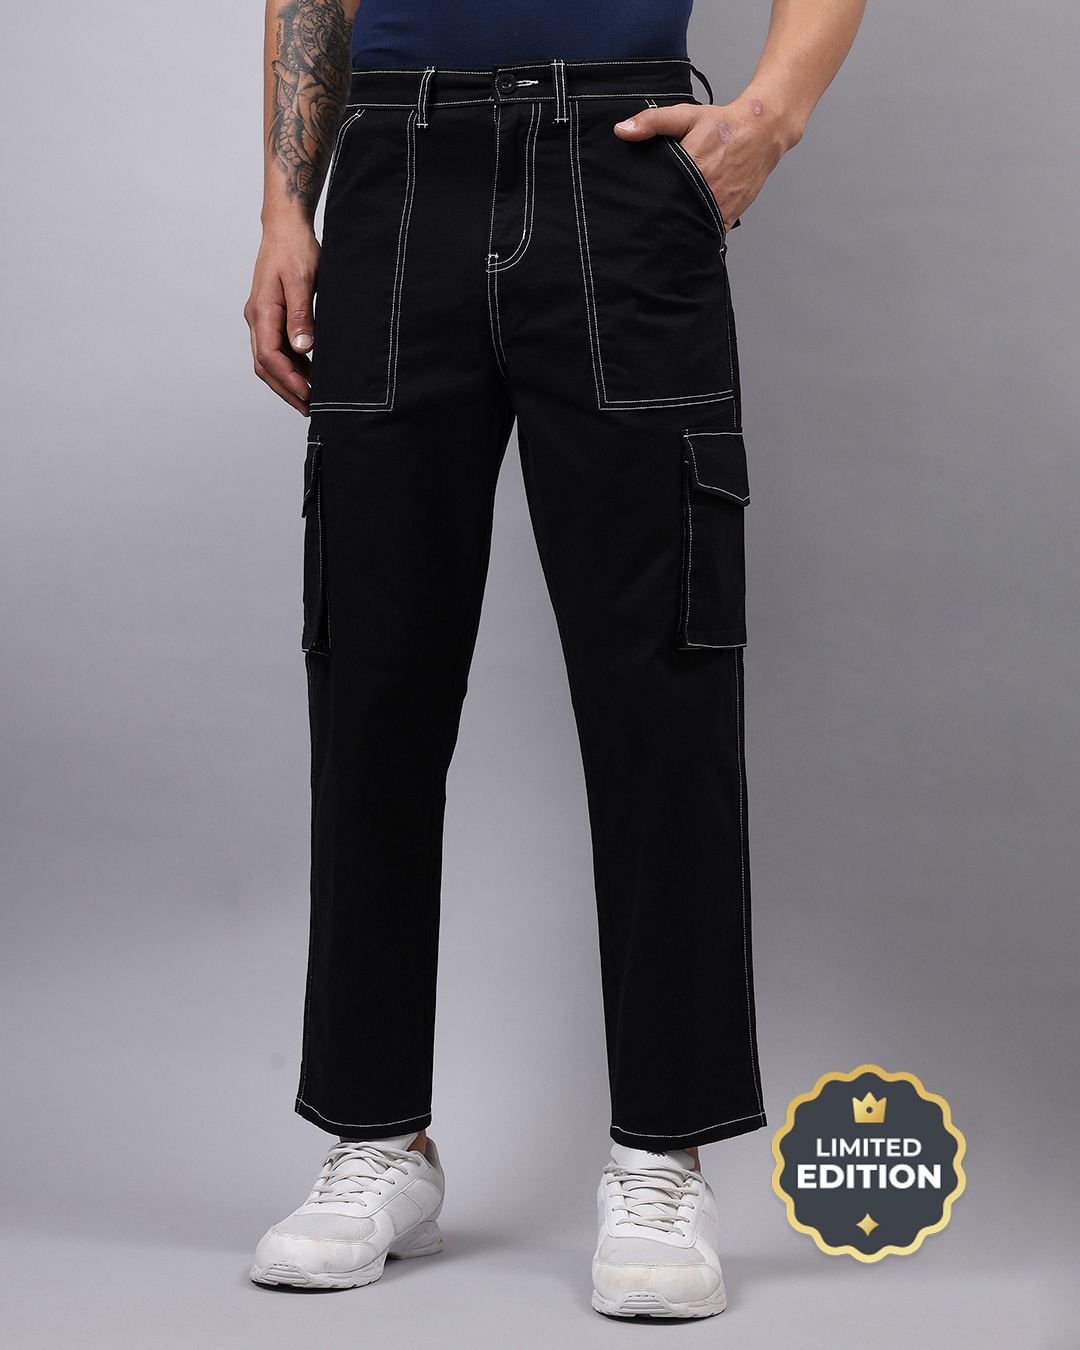 Buy Men's Black Oversized Cargo Pants Online at Bewakoof